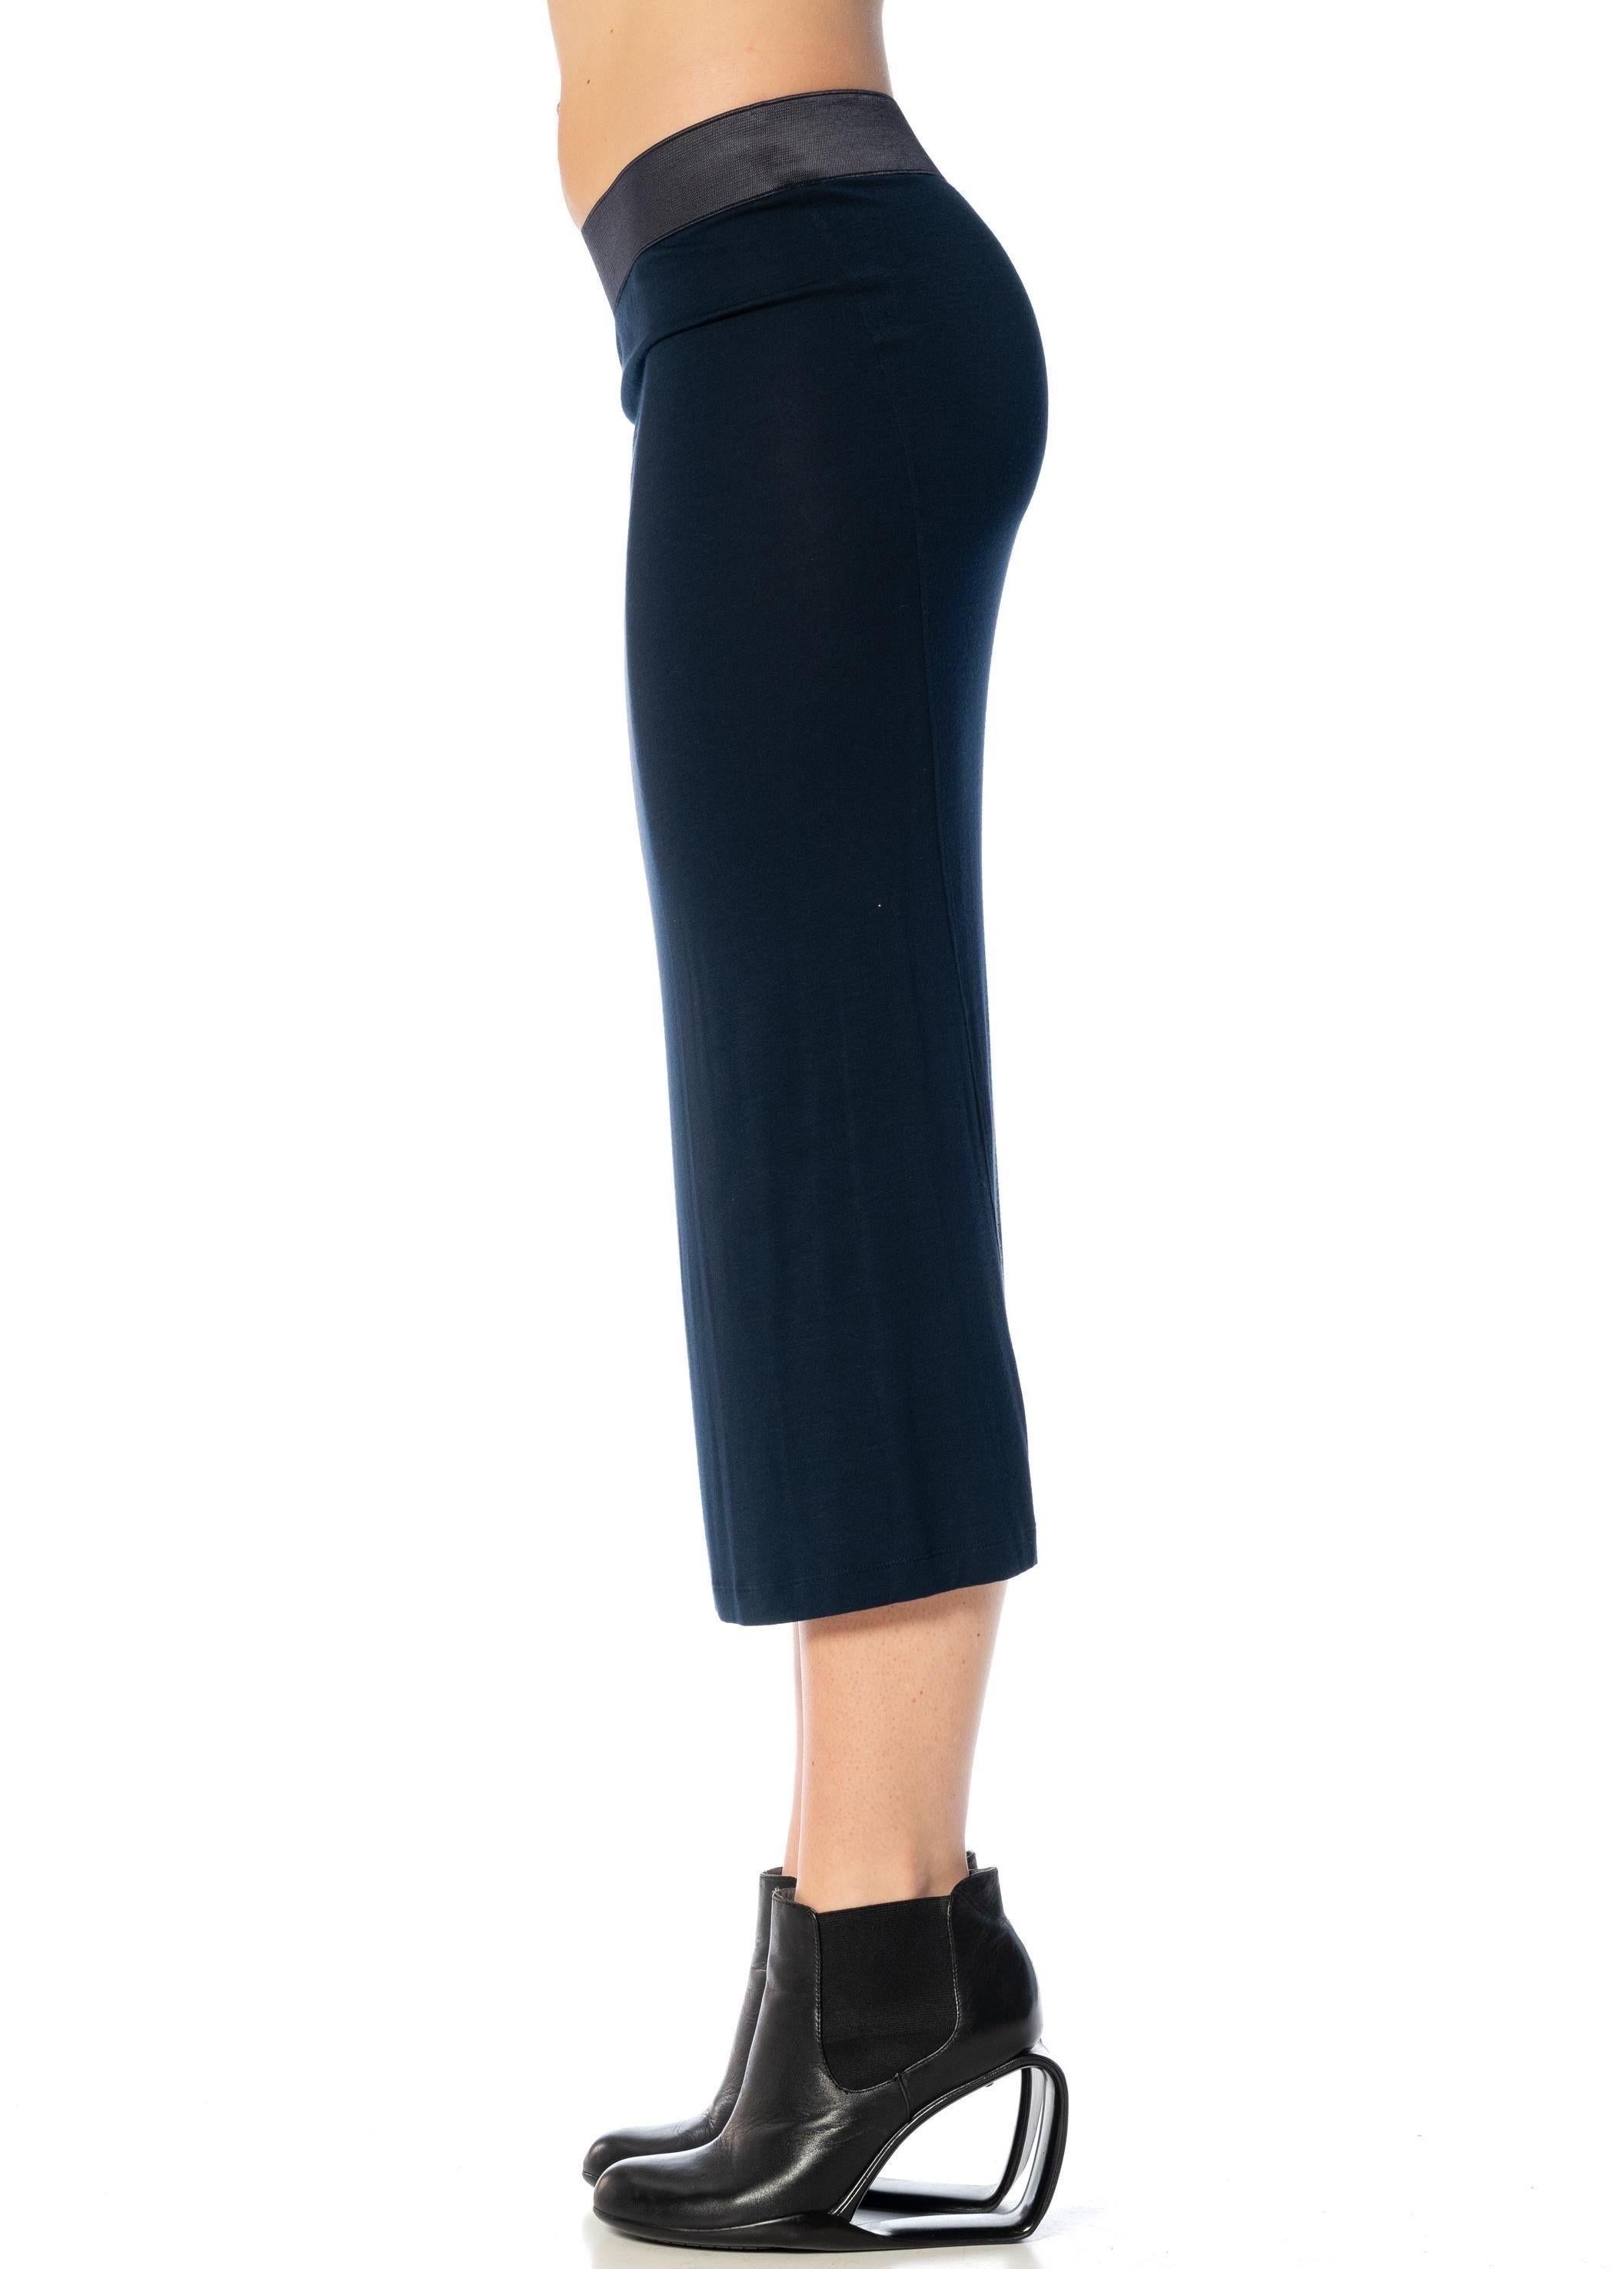 DONNA KARAN, jupe en rayonne bleu nuit avec ceinture élastique épaisse, années 2000 Excellent état - En vente à New York, NY